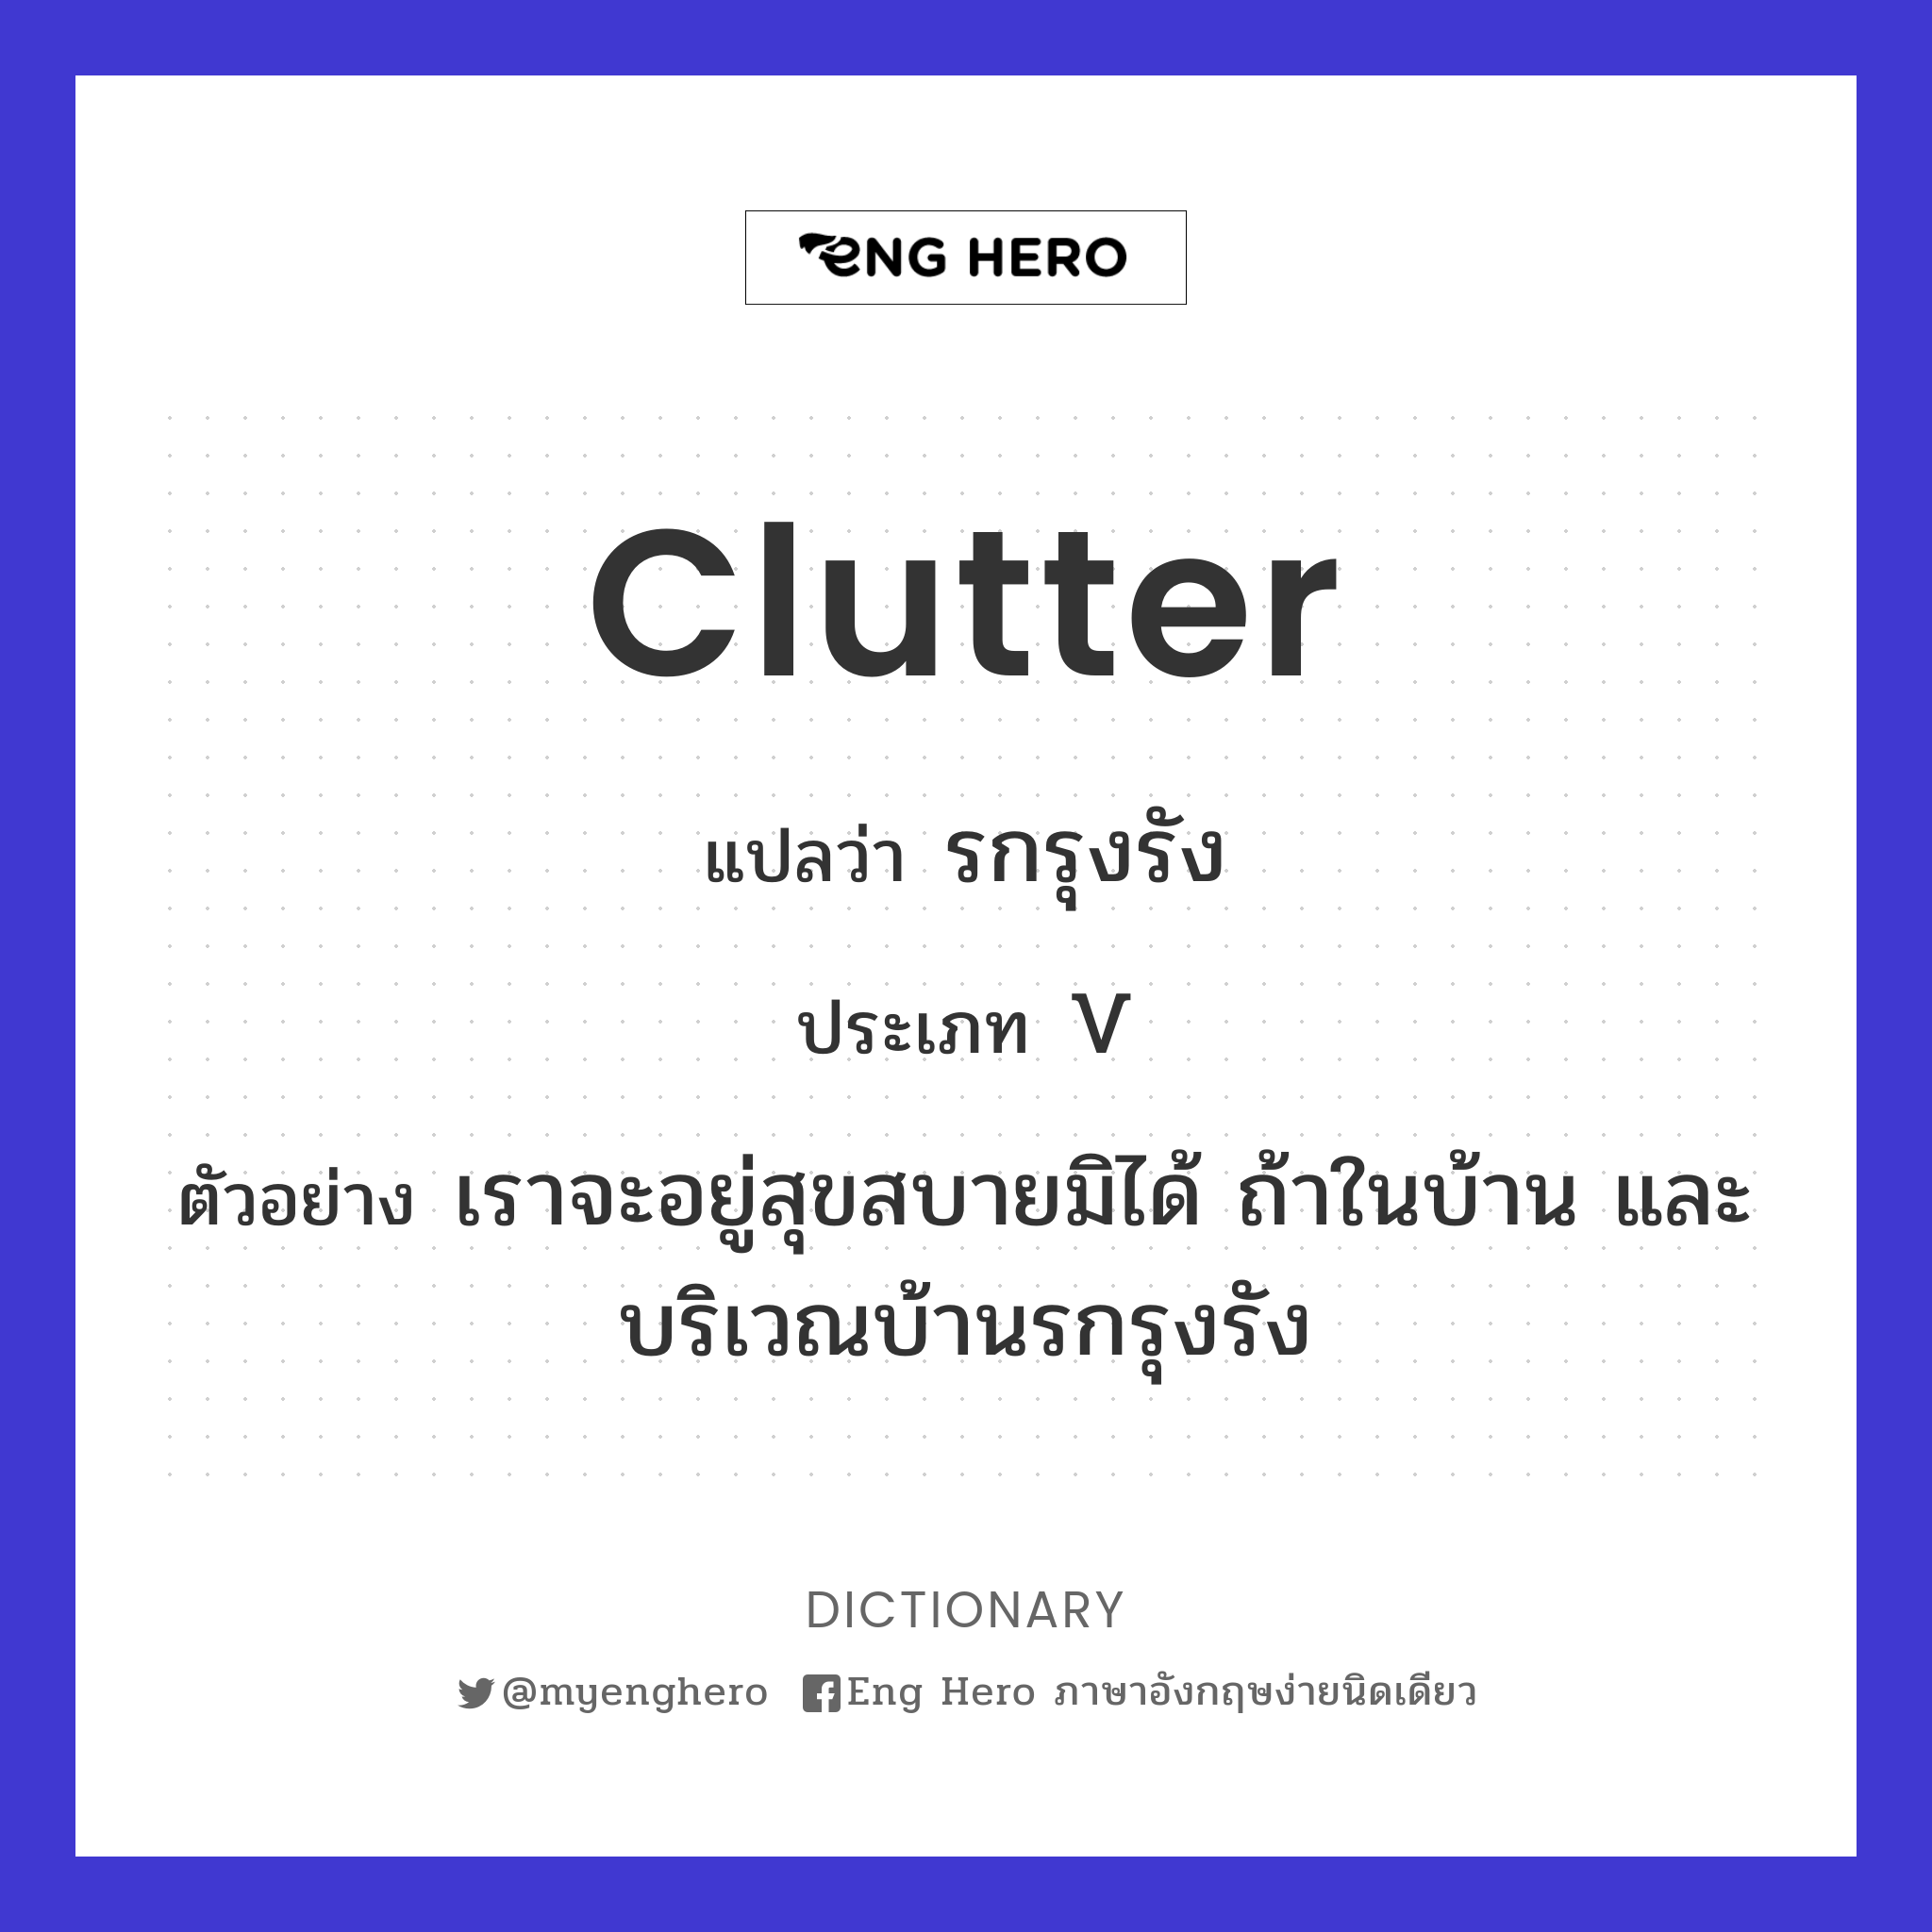 clutter